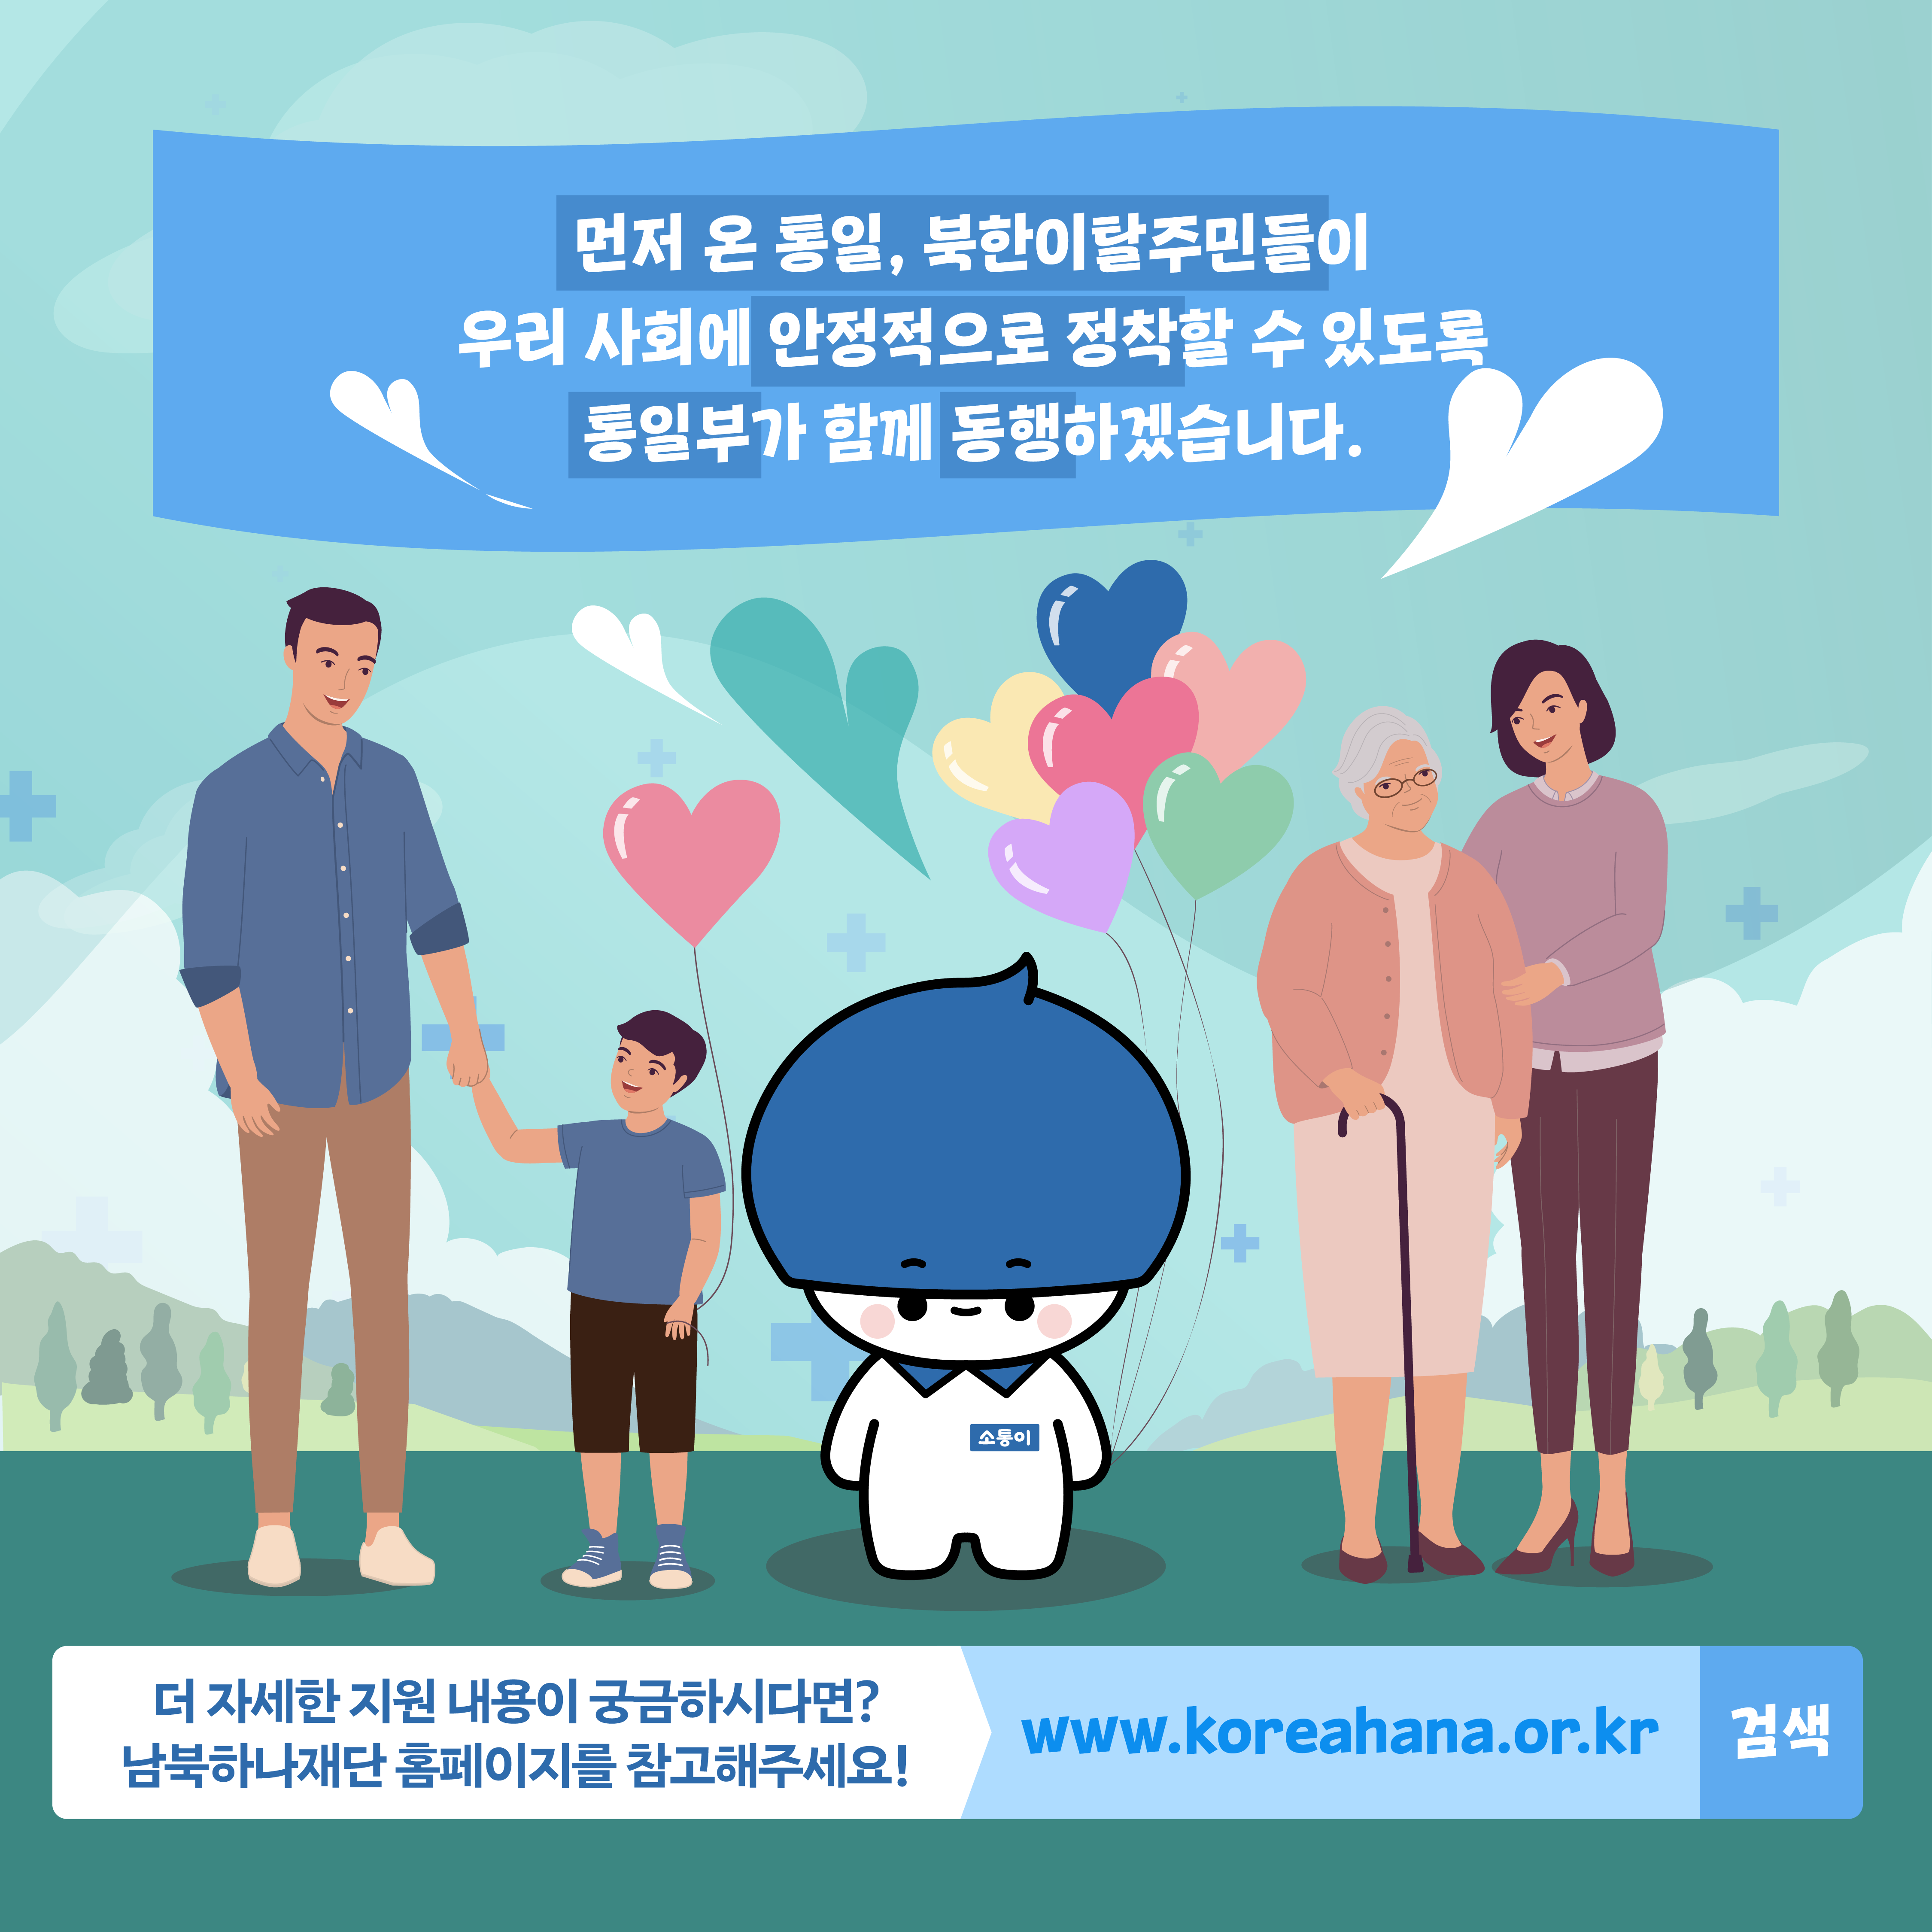 먼저 온 통일, 북한이탈주민들이 우리 사회에 안정적으로 정착할 수 있도록 통일부가 함께 동행하겠습니다.
더 자세한 지원 내용이 궁금하시다면? 남북하나재단 홈피에지를 참고해주세요!
www.koreahana.or.kr 검색